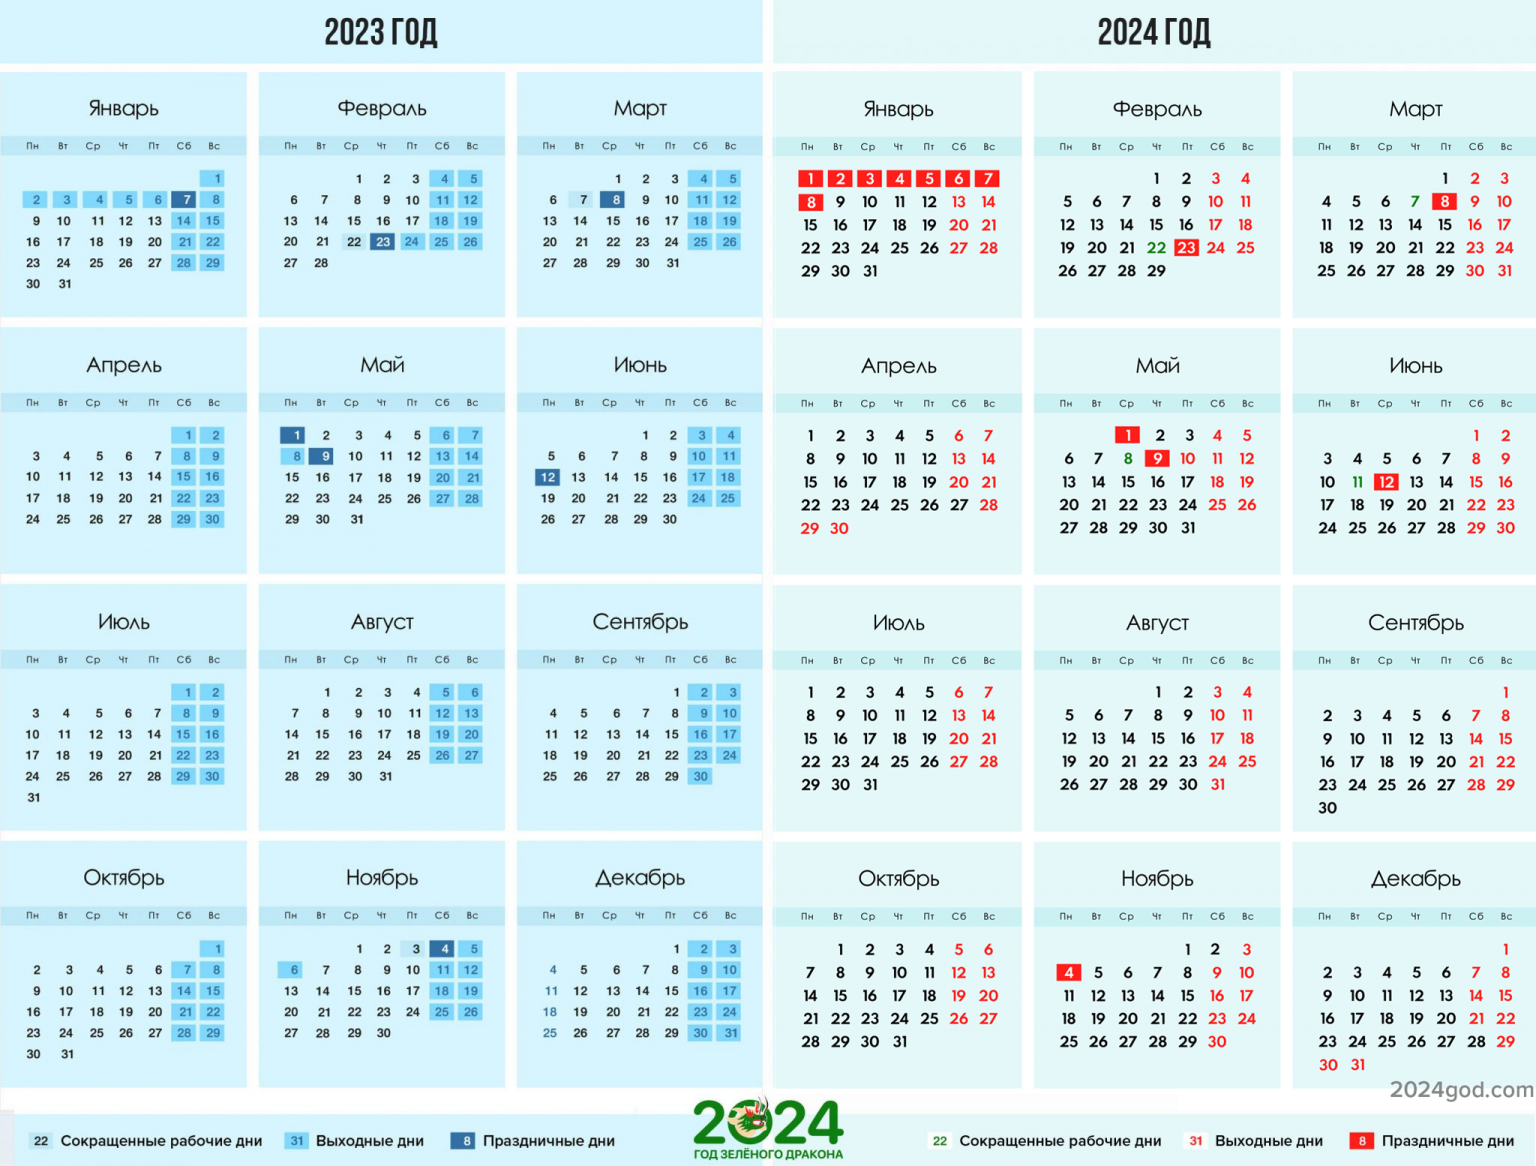 Выходные 2024 год башкортостан. Календарь на 2024 год. Календарь на 2024 год с праздниками. Календарь выходных на 2024 год. Календарь с праздничными днями на 2024 год.